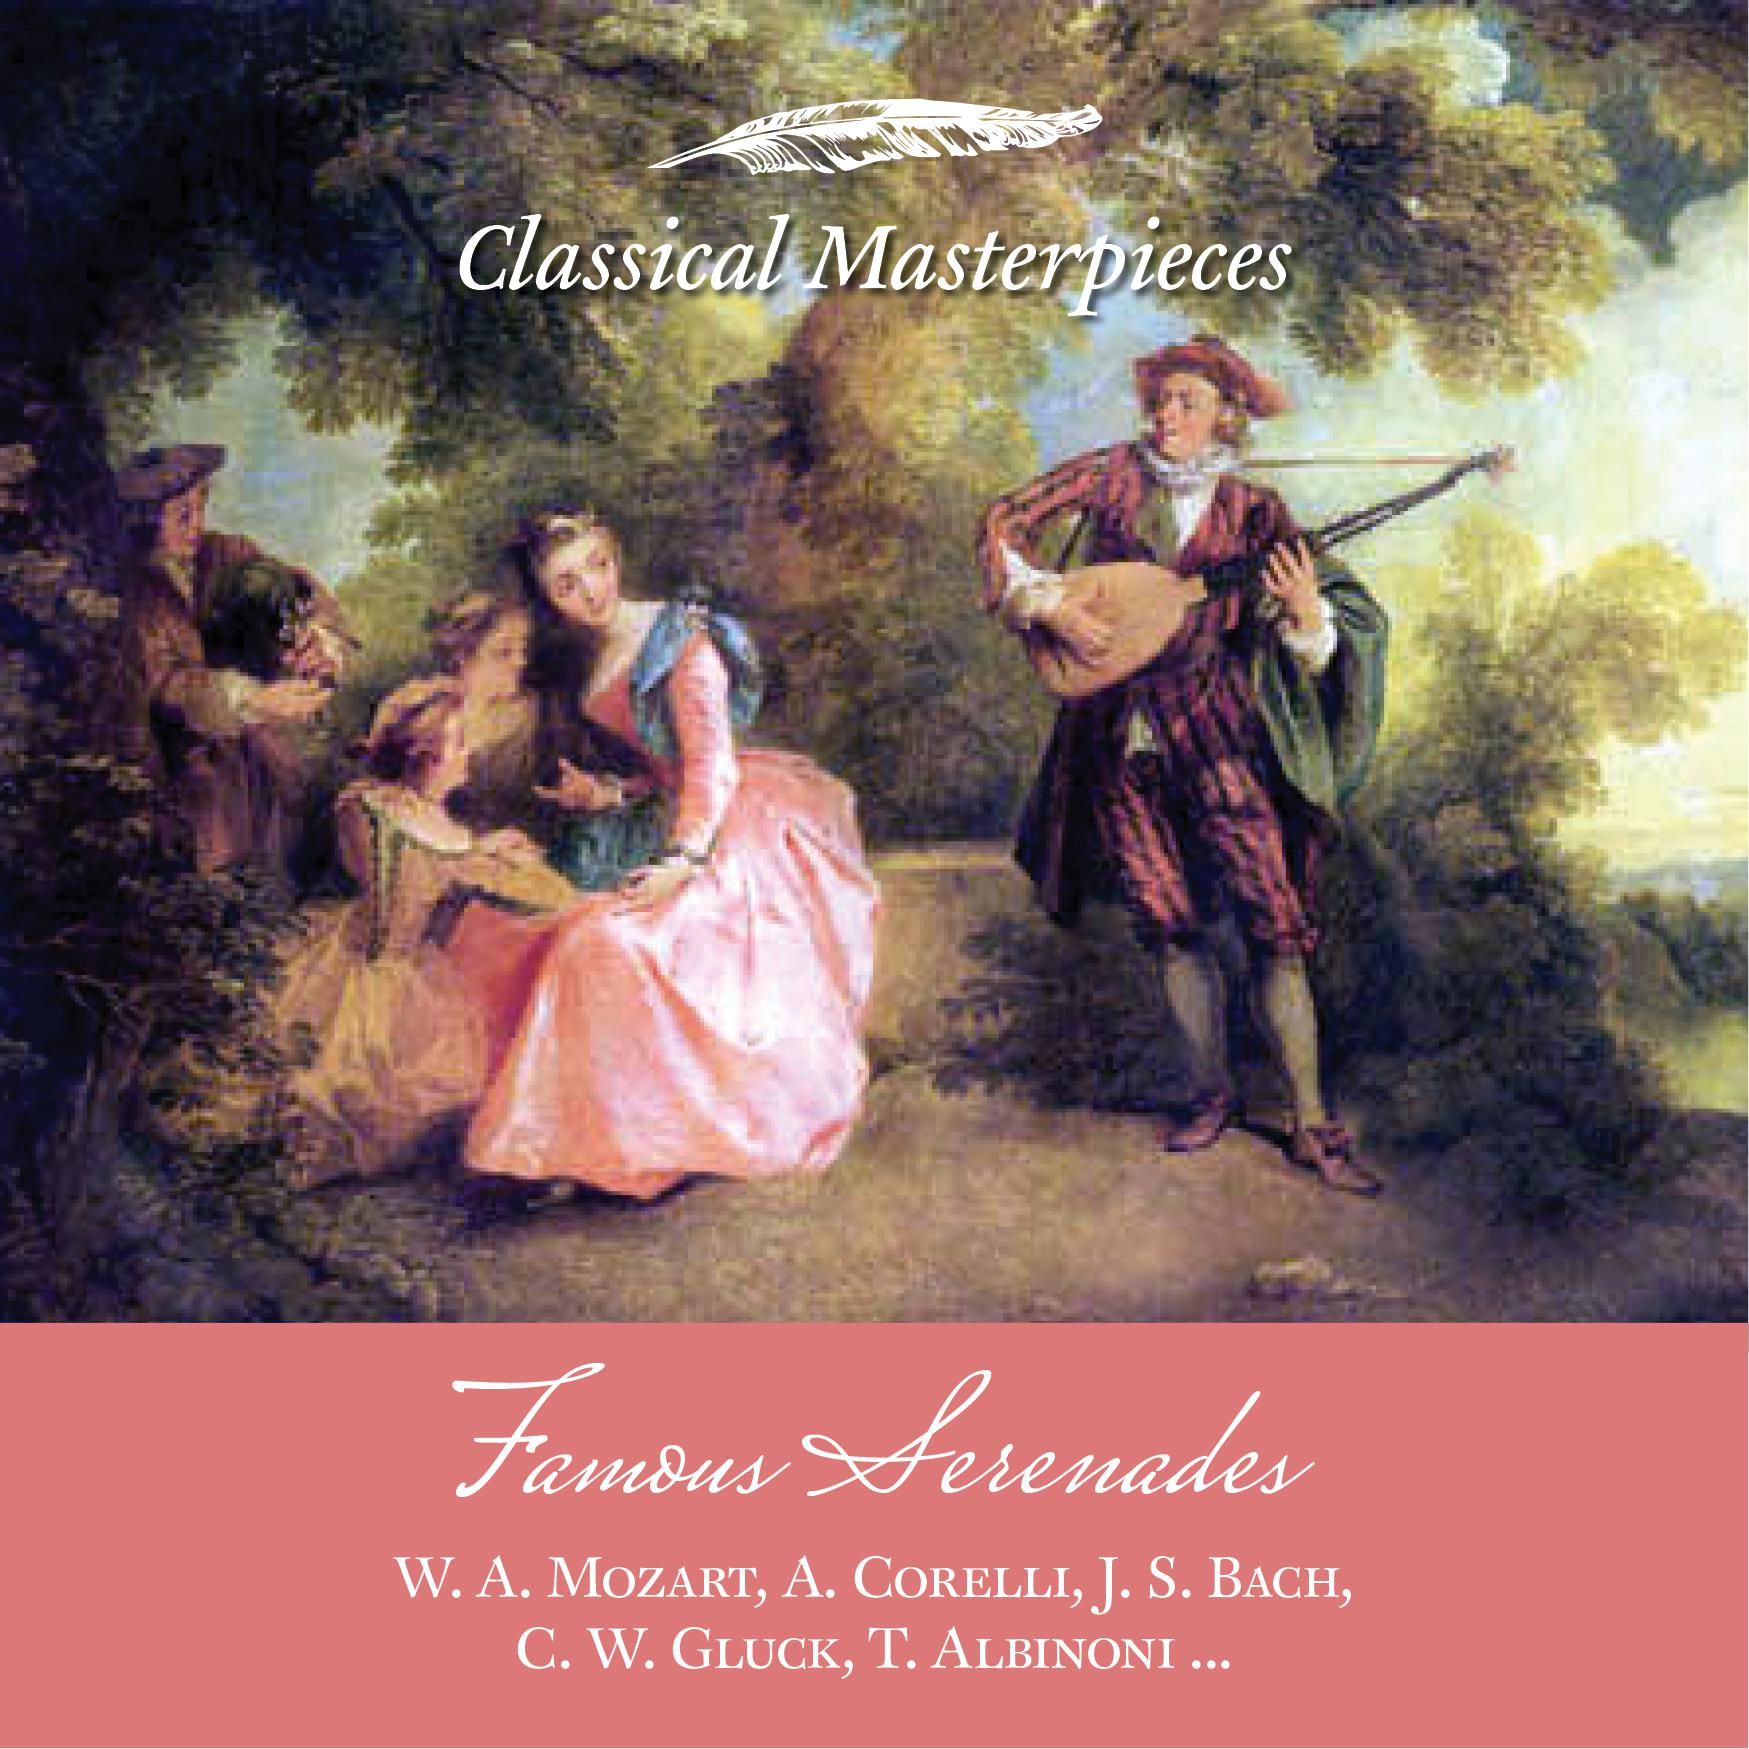 Famous Serenades: W.A. Mozart, A. Corelli, J.S. Bach, C.W. Gluck, T. Albinoni